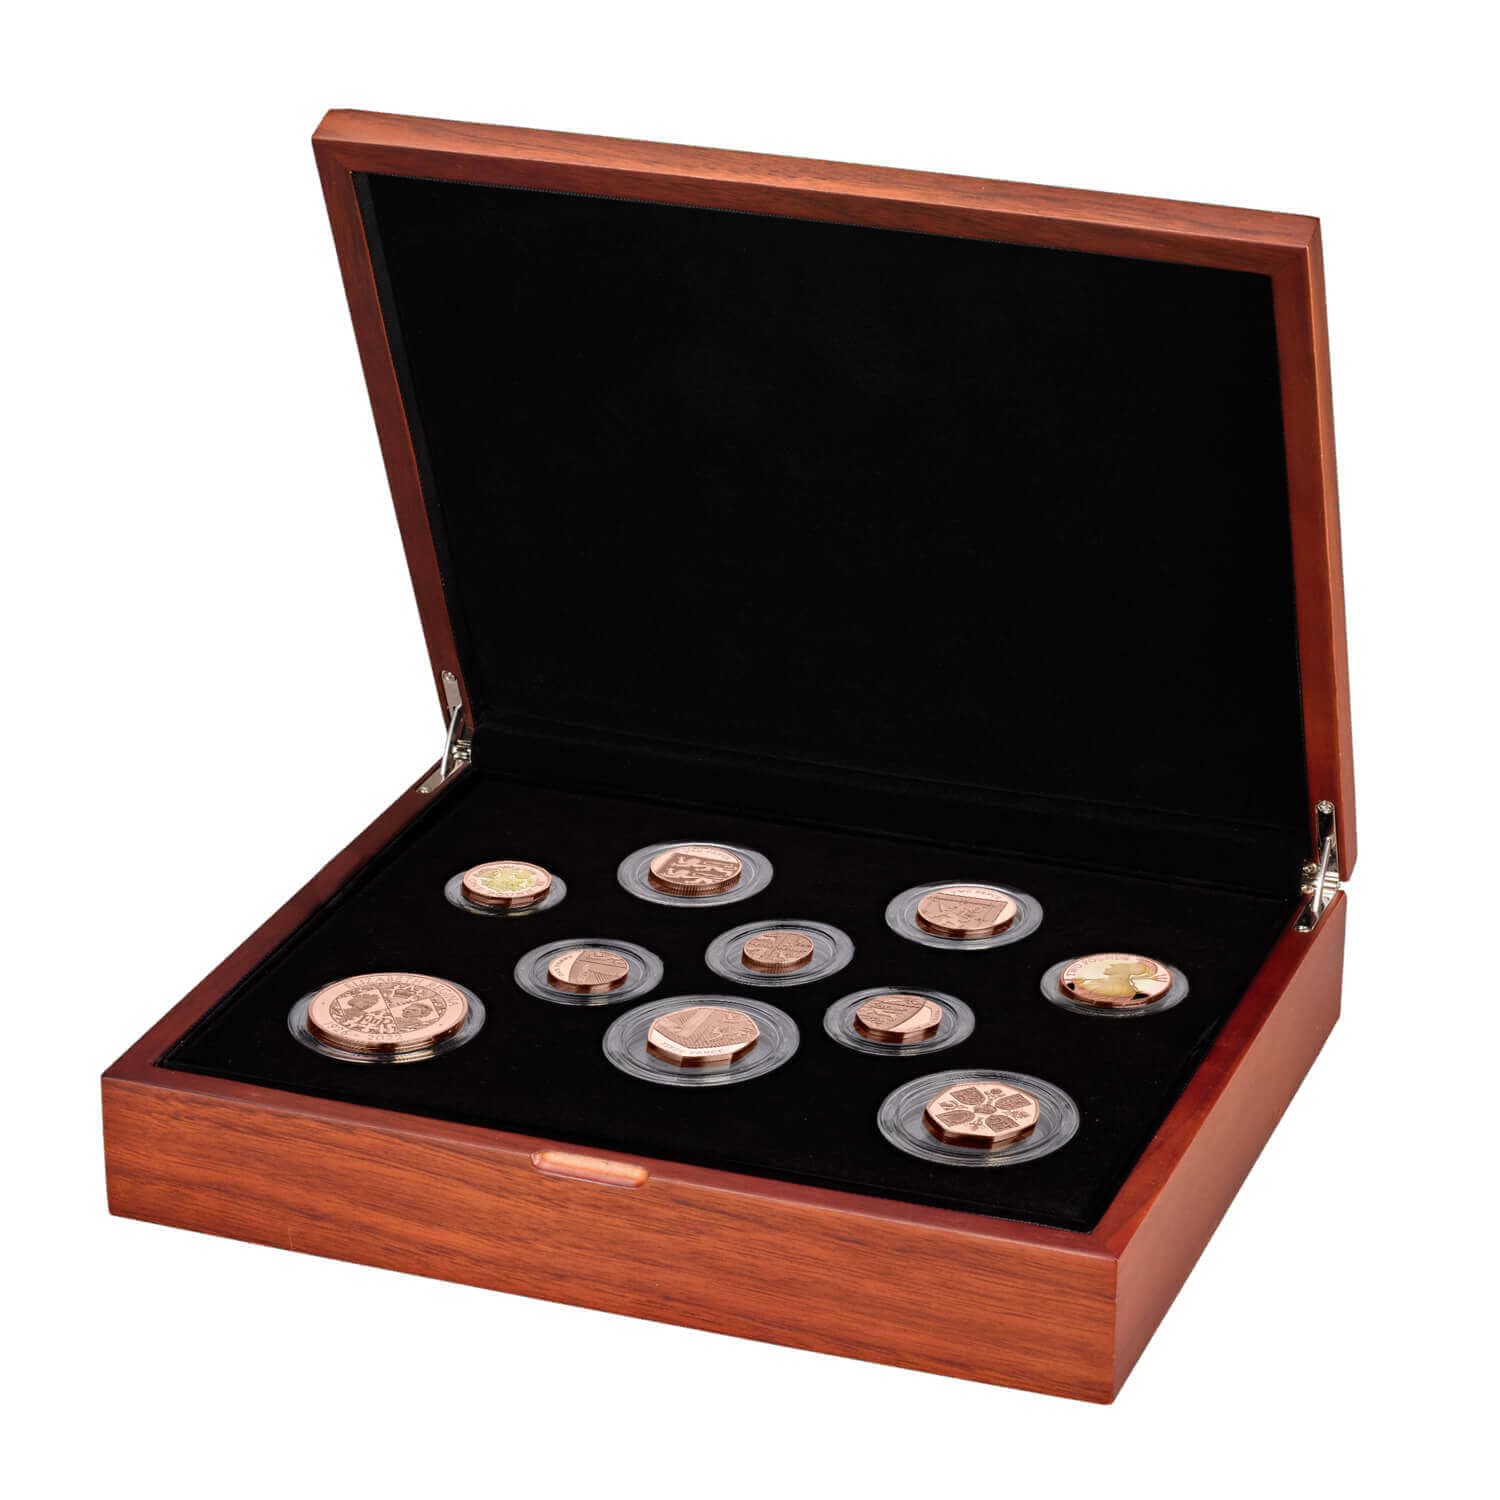 年 エリザベス女王追悼 メモリアルコインセット金貨